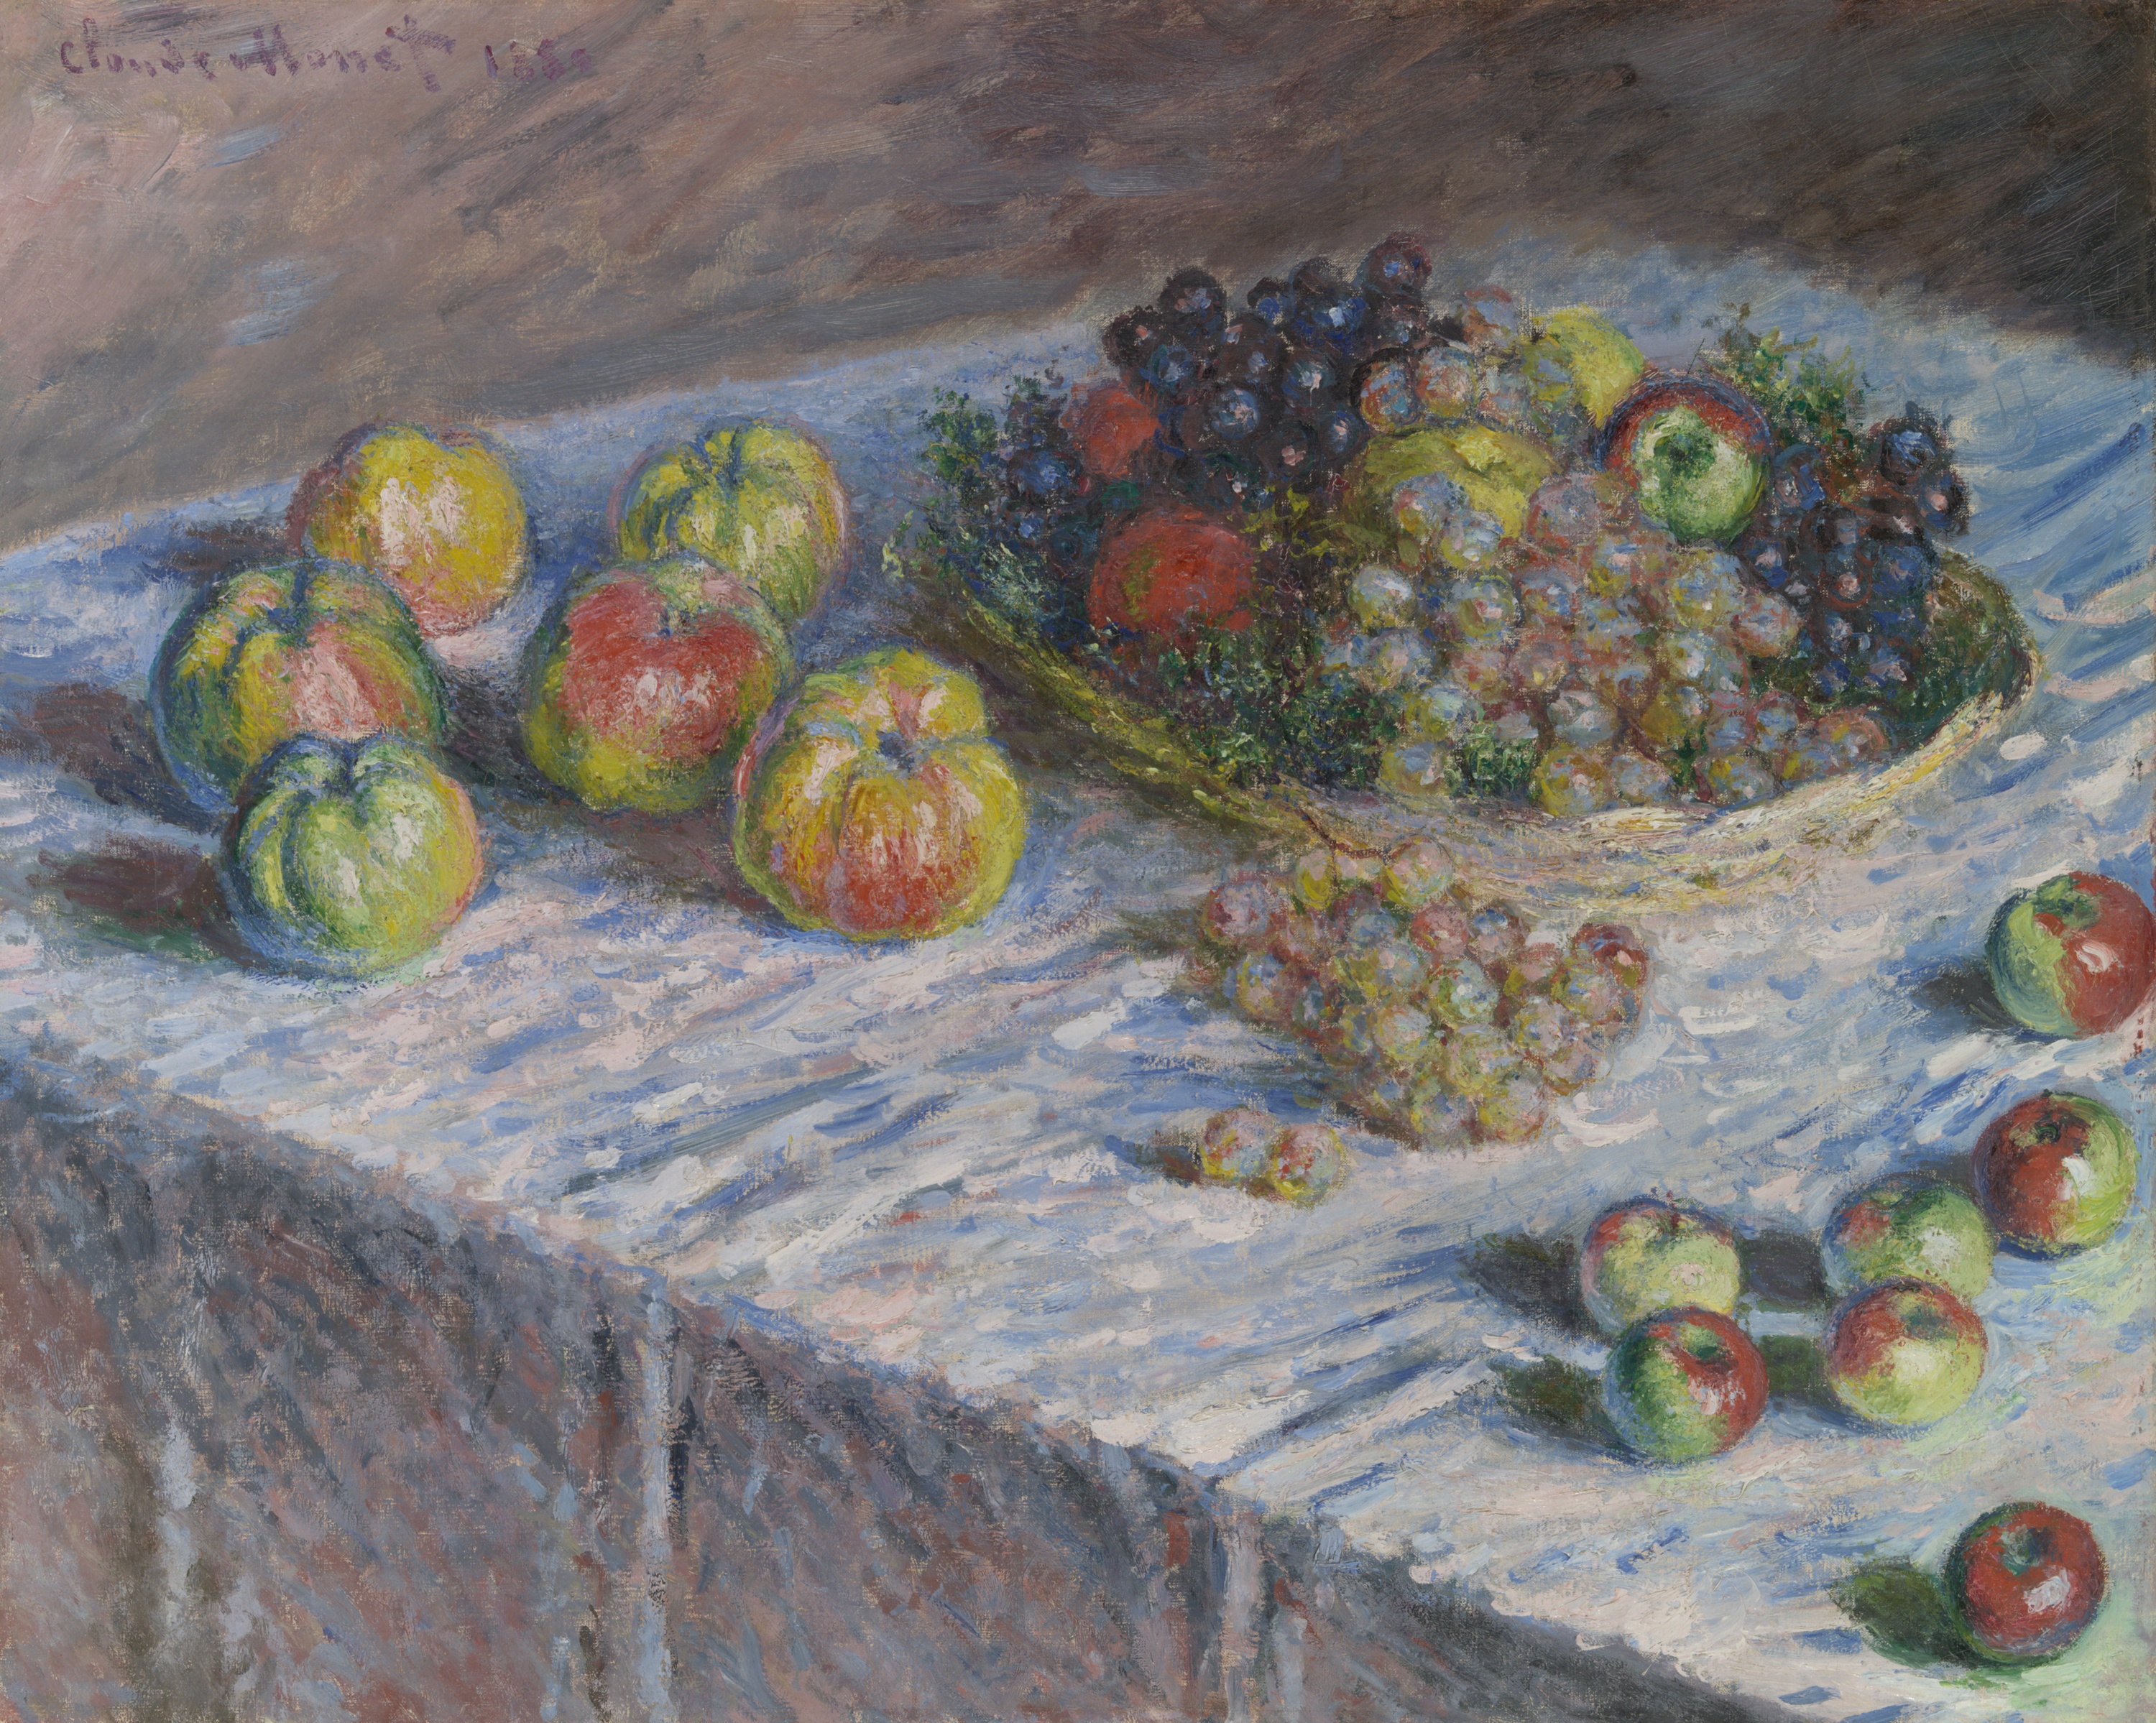 苹果和葡萄 by 克劳德· 莫奈 - 1880 - 66.5 × 82.5 cm 芝加哥藝術博物館